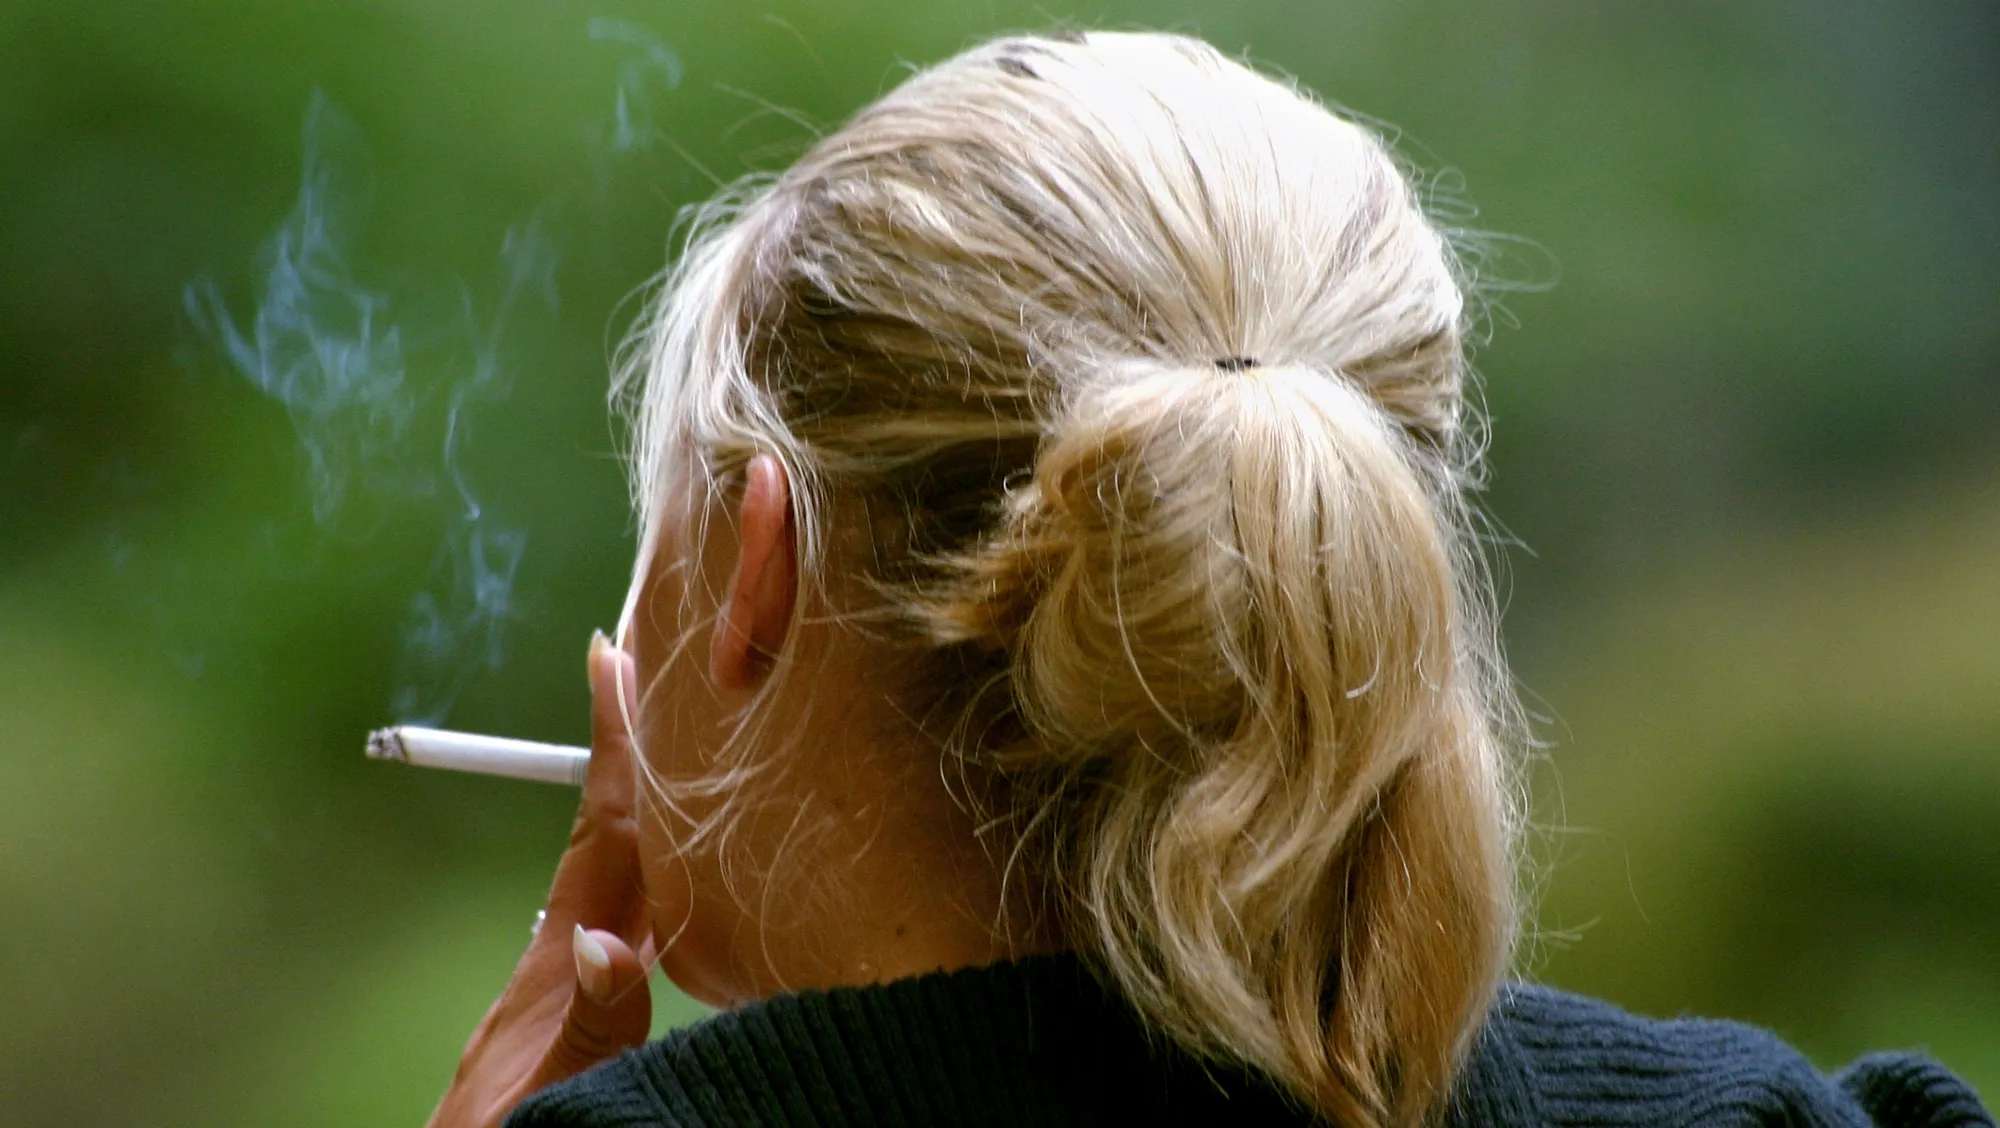 جمعیت زنان سیگاری در جهان بیشتر است یا مردان سیگاری؟